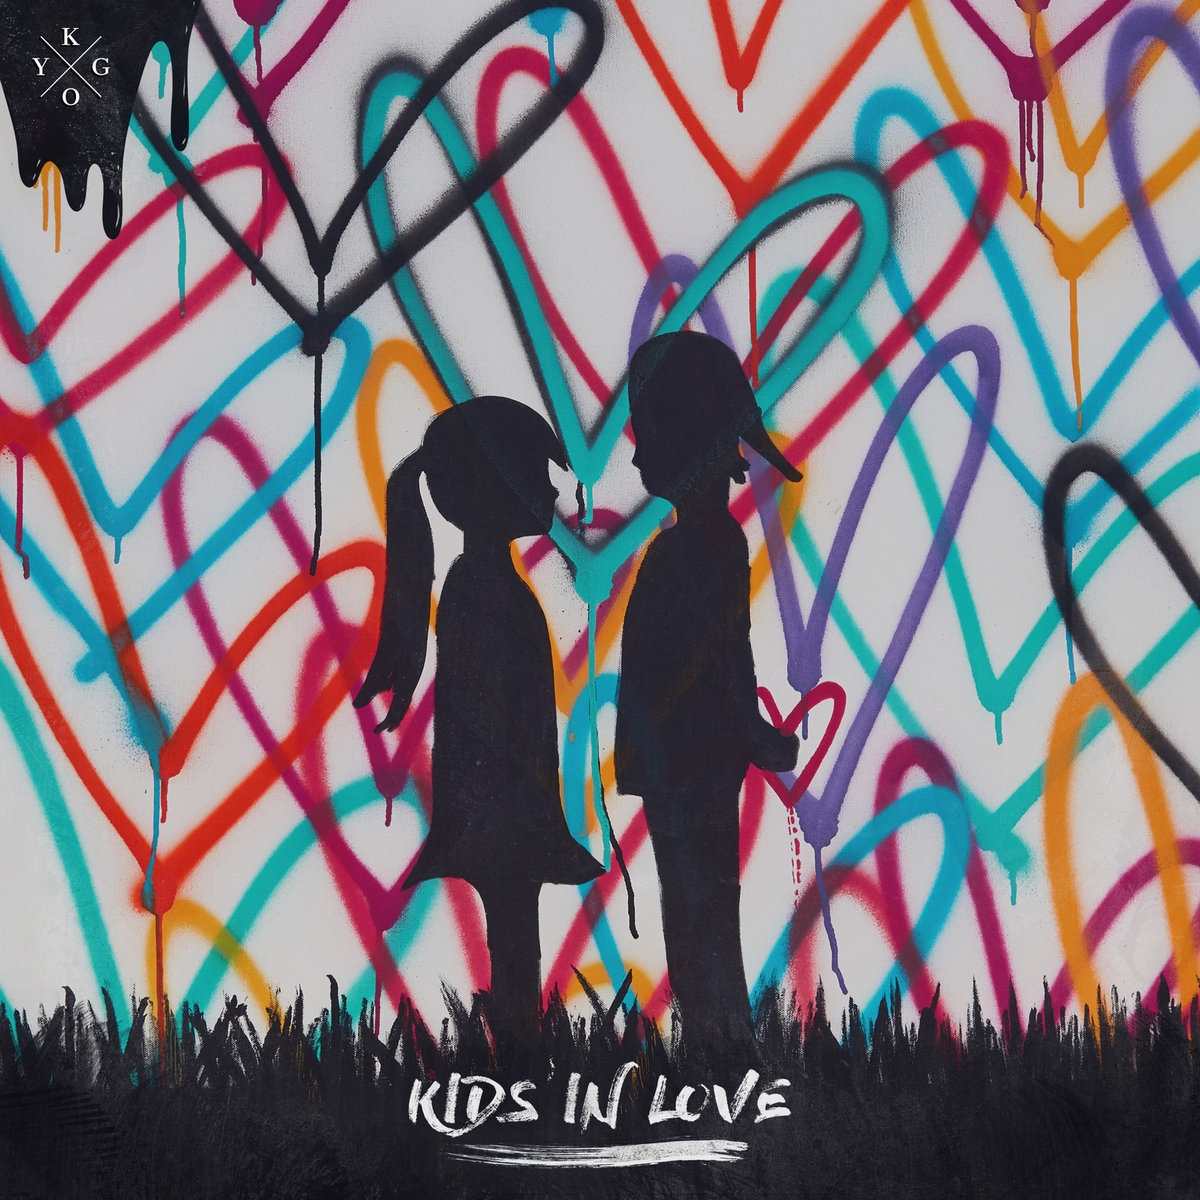 Kygo - Kids In Love